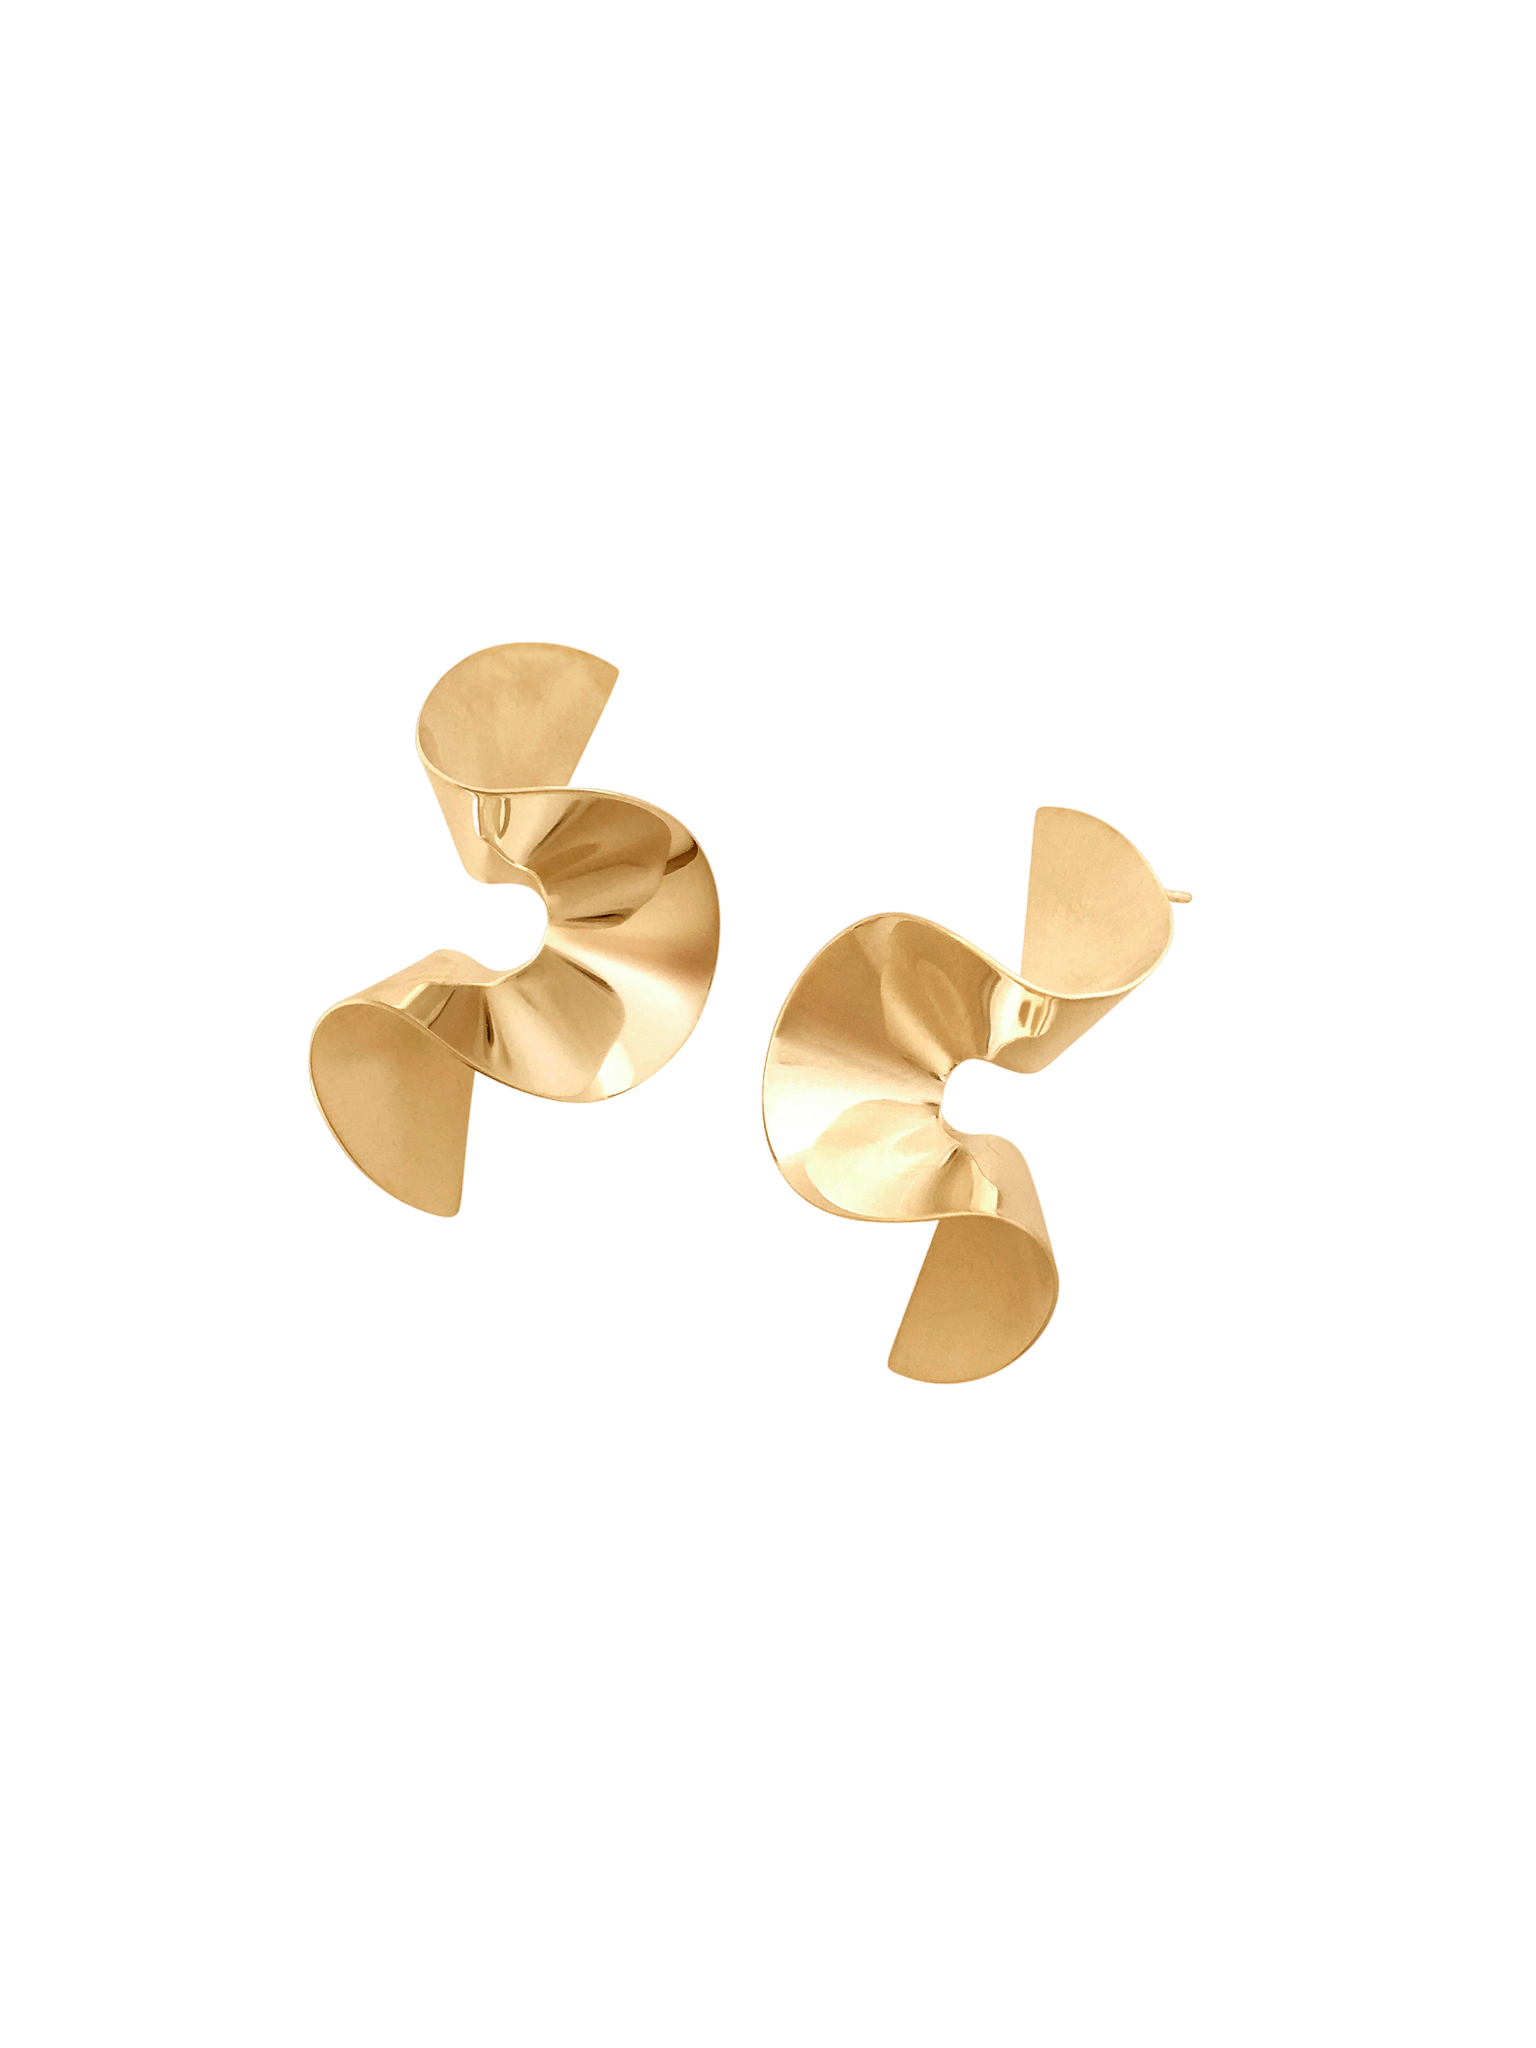 Flounce II earrings in gold vermeil